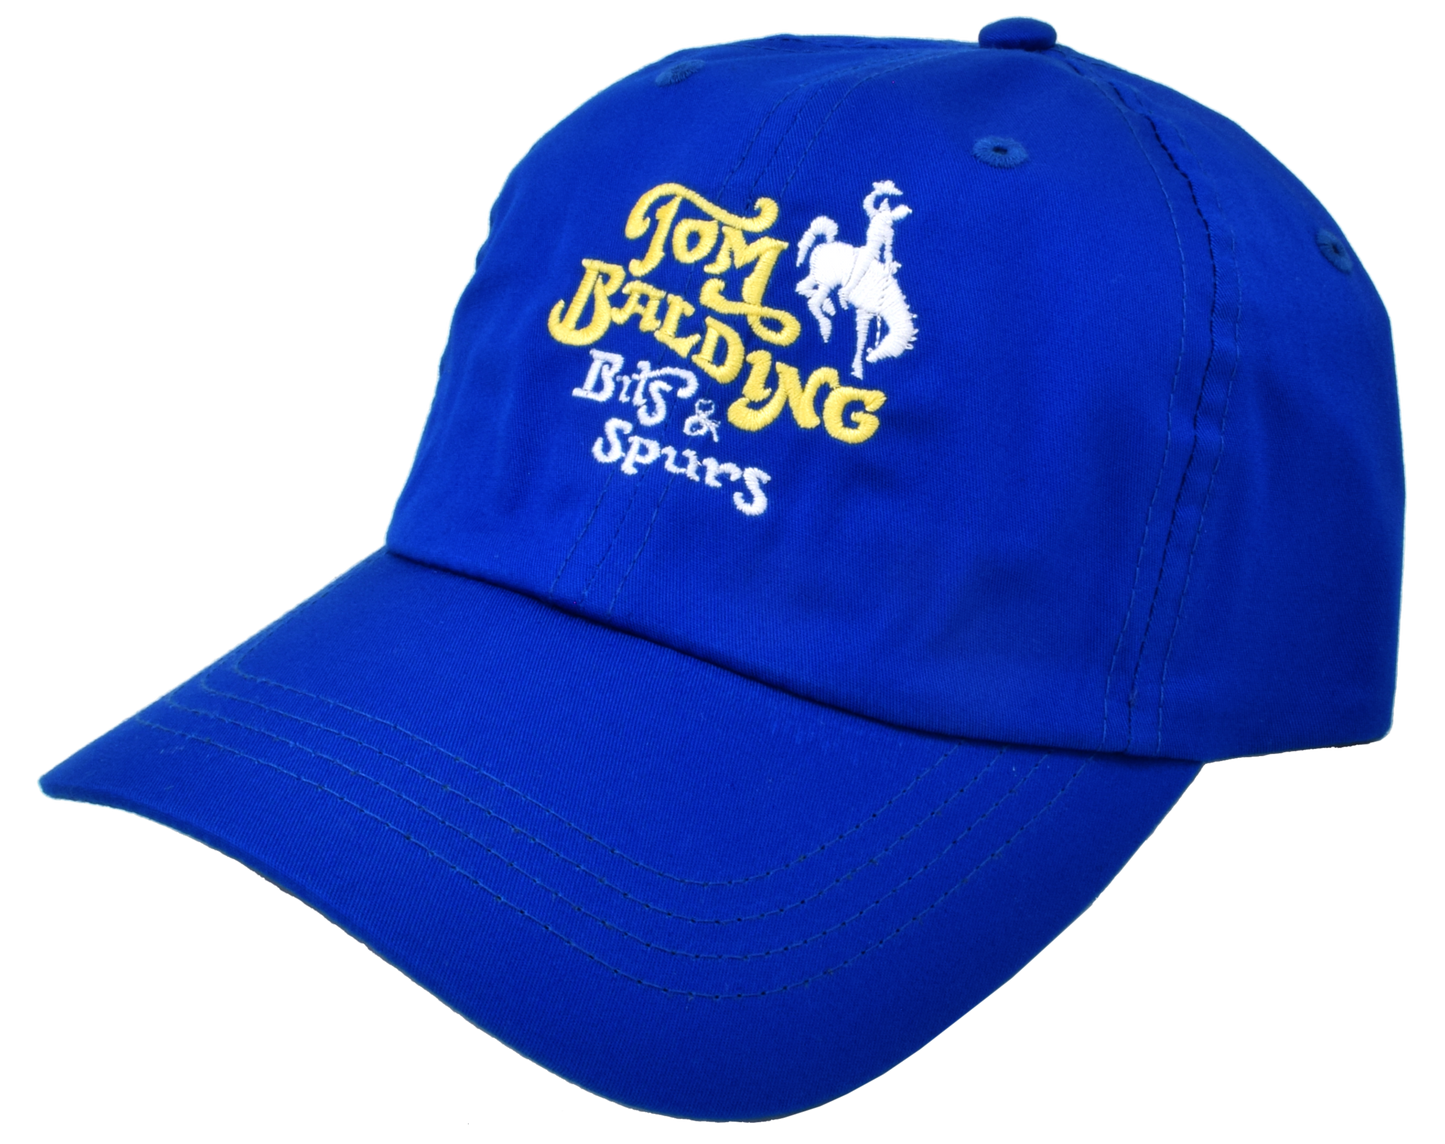 Бейсболка #42 Imperial Royal Blue Cap от Tom Balding Bits & Spurs